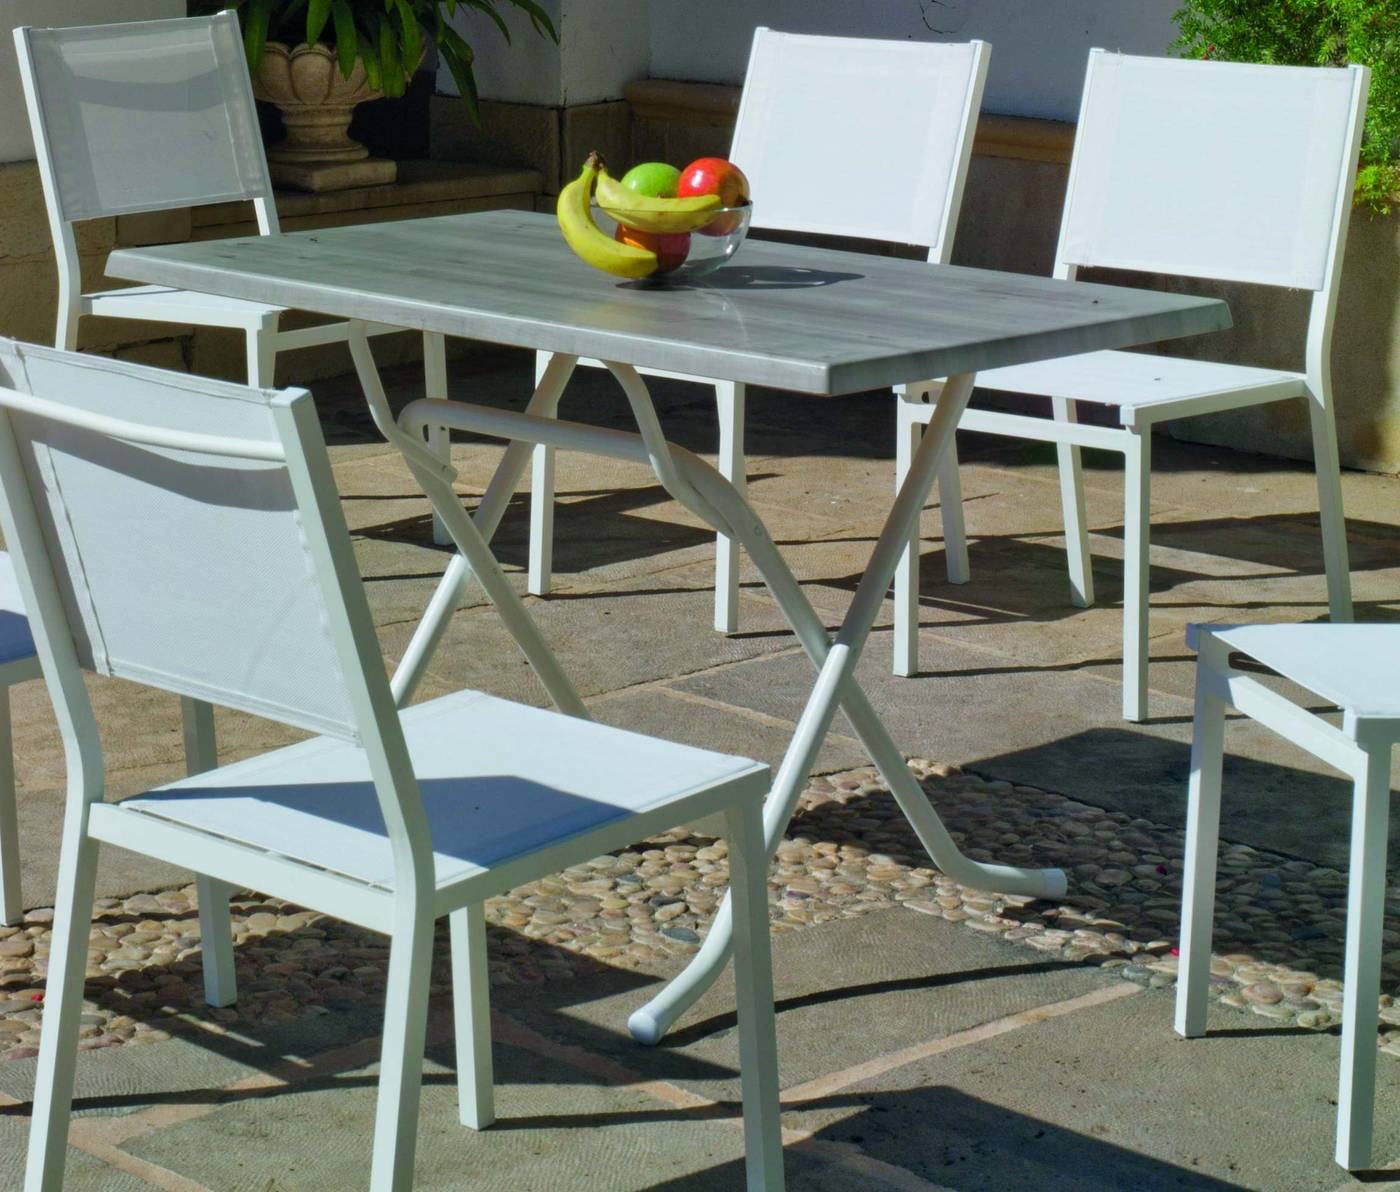 Set Aluminio Arian-Sion 120-6 - Conjunto aluminio color blanco: mesa rectangular plegable de 120 cm. con tablero de heverzaplus + 6 sillas de aluminio y textilen